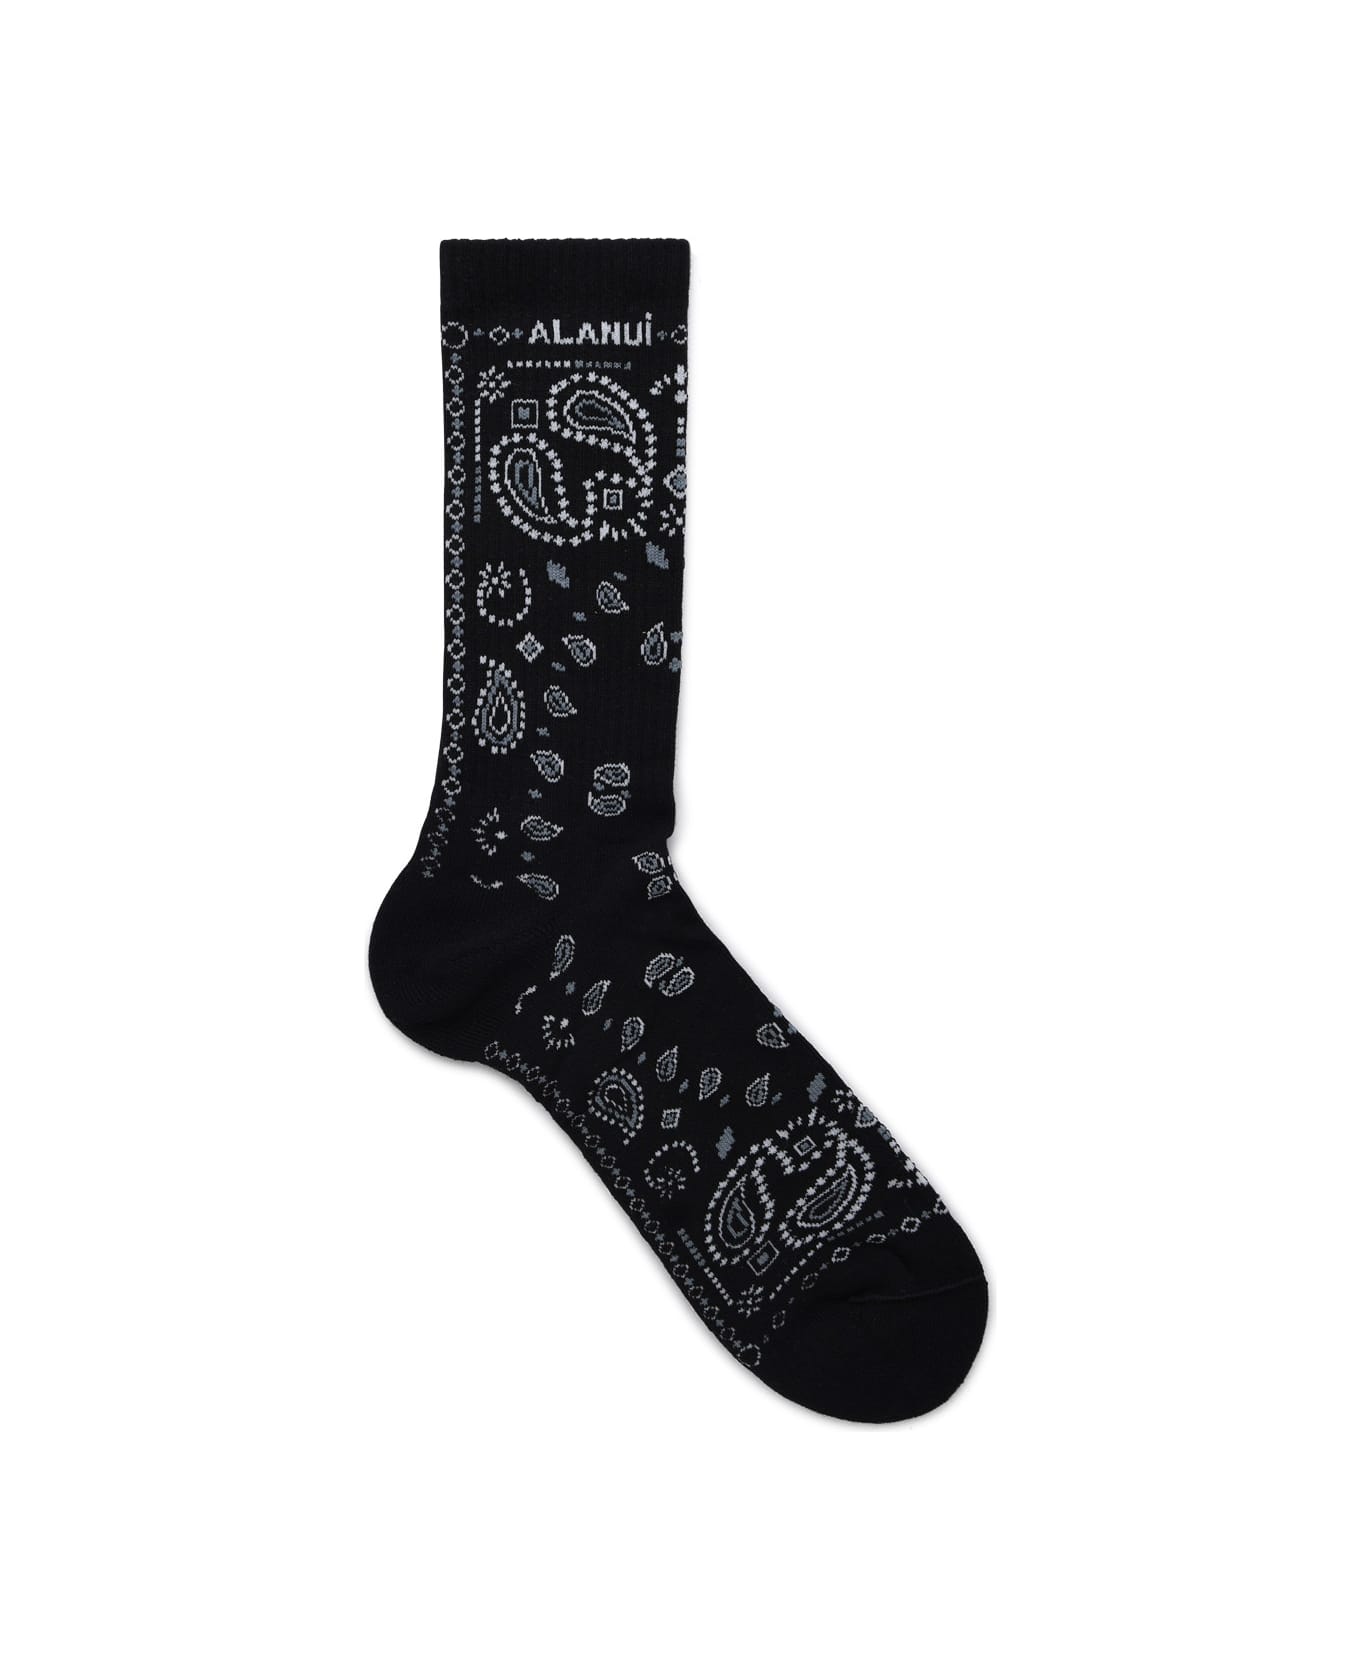 Alanui Black Cotton Socks - Black